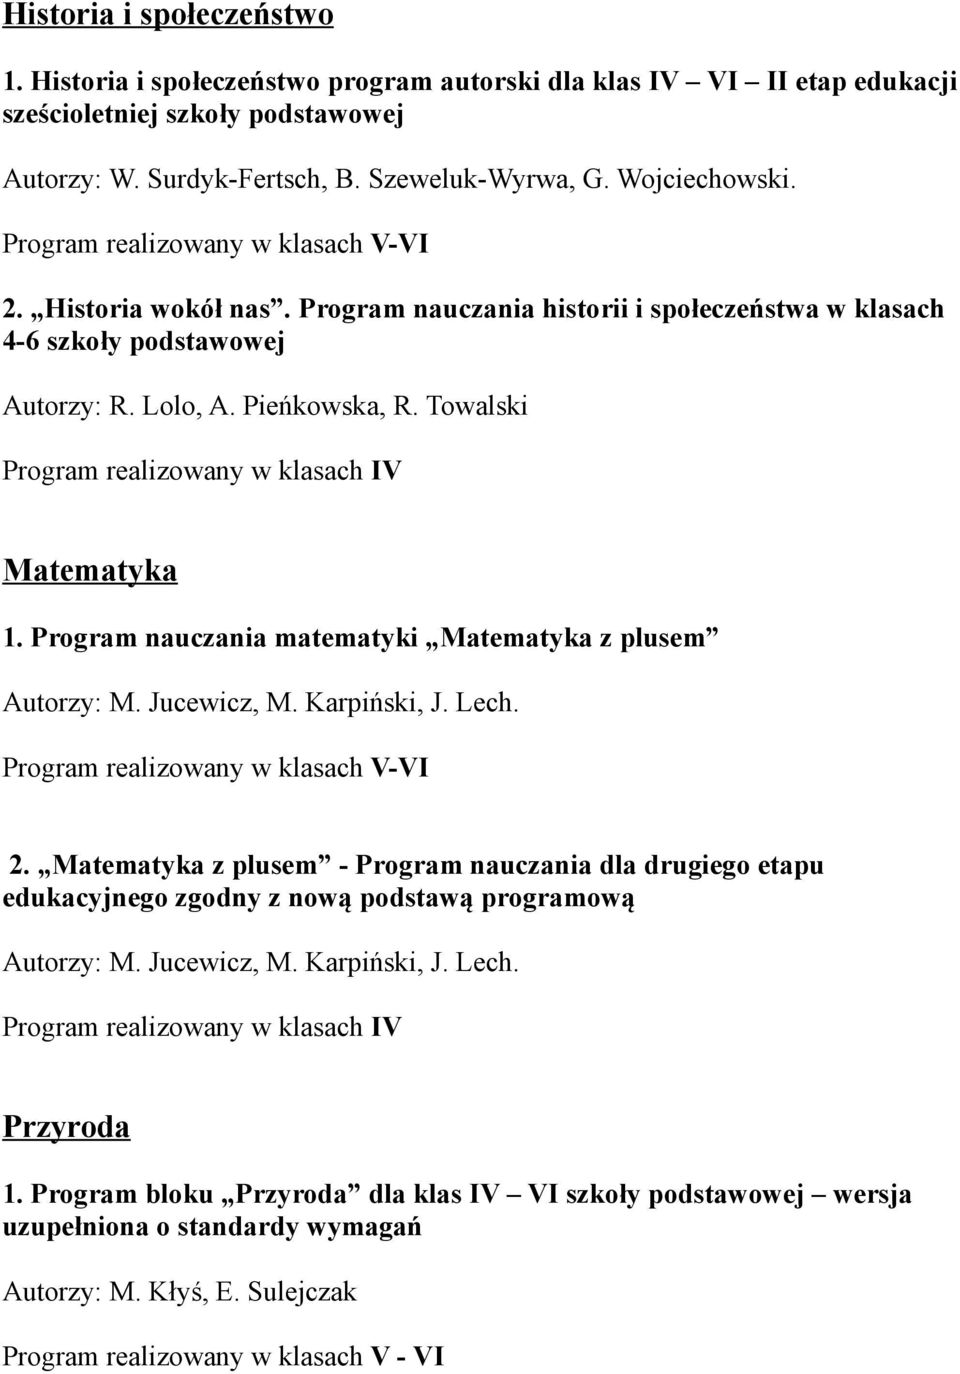 Program nauczania matematyki Matematyka z plusem Autorzy: M. Jucewicz, M. Karpiński, J. Lech. 2.